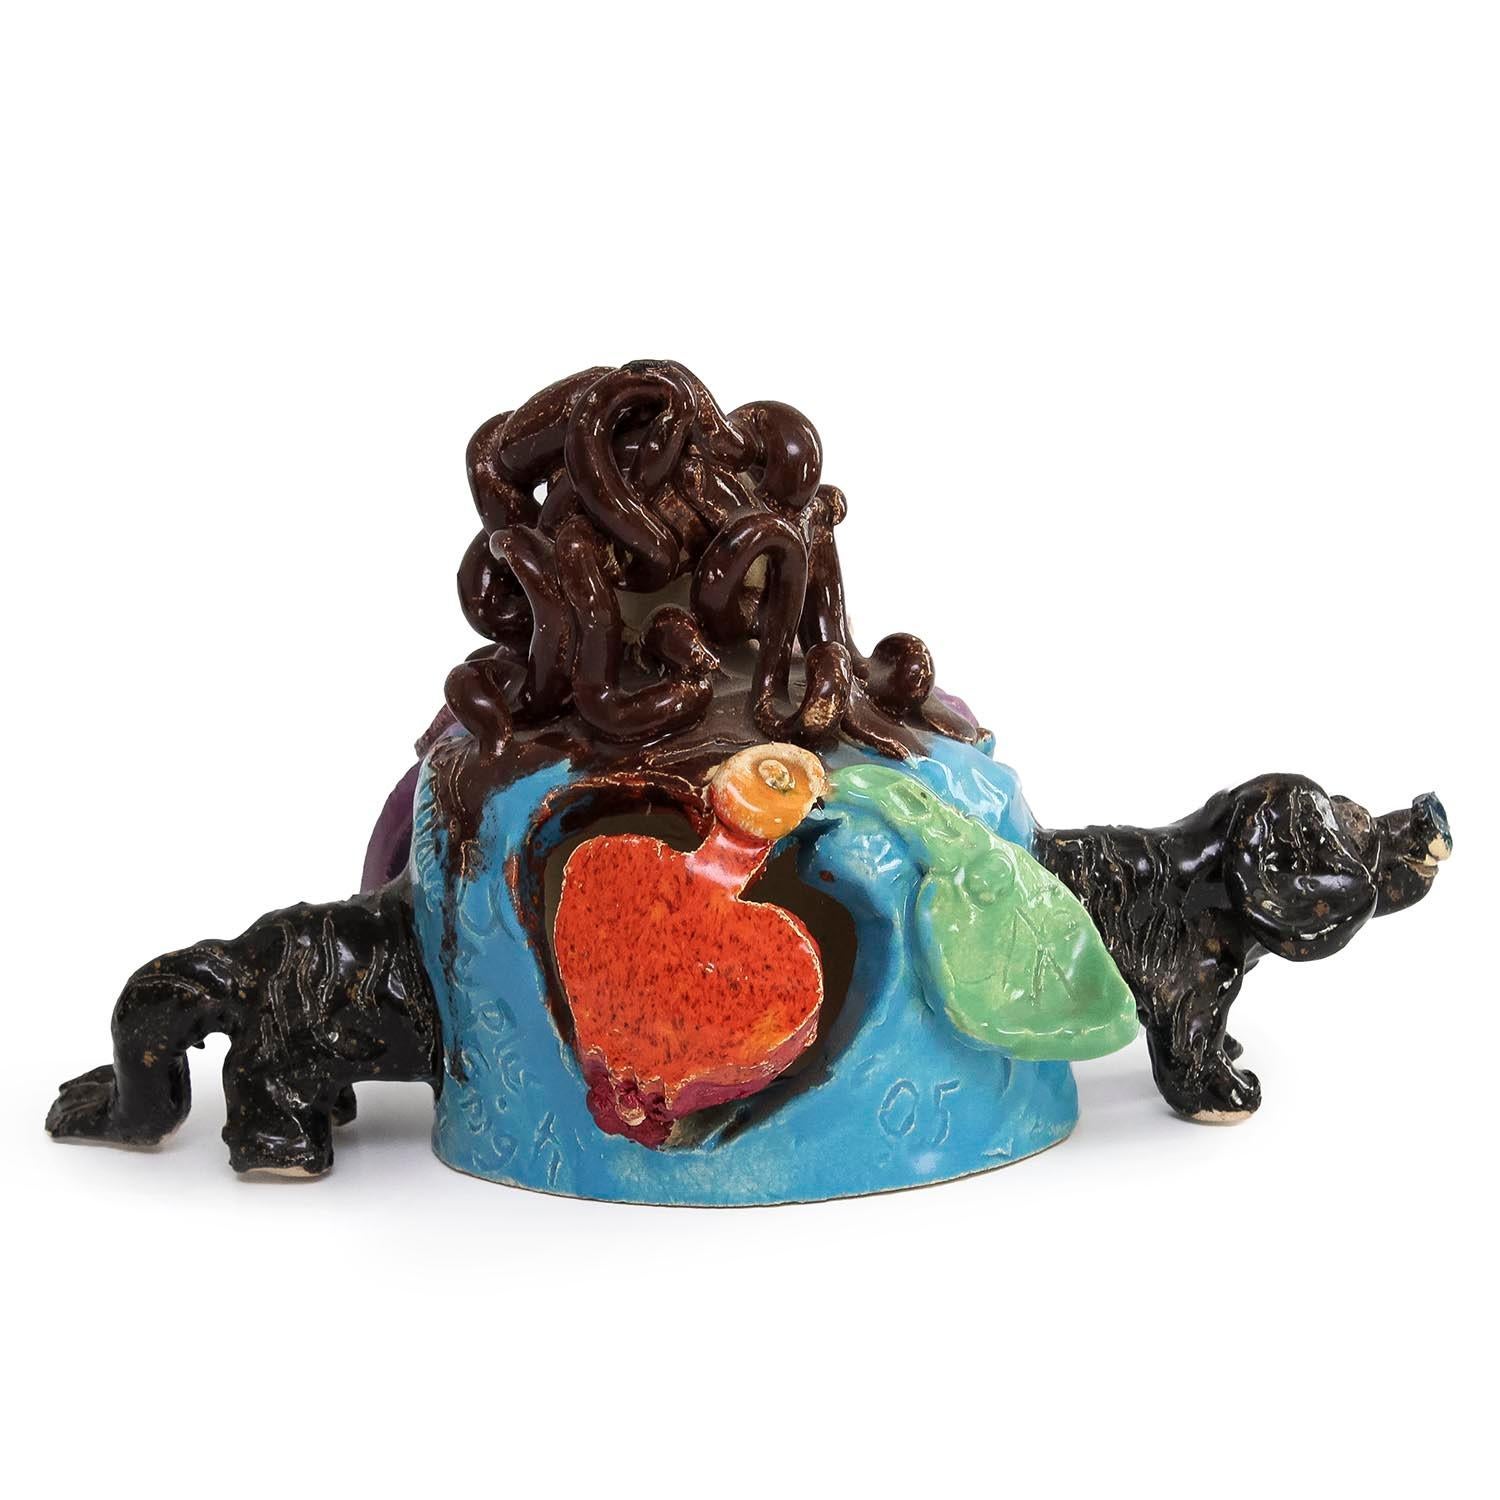 Maija Peeples-Bright
Sir Woffic Newton (INV# NP4058)
ceramic and glaze
6.25 x 5 x 10